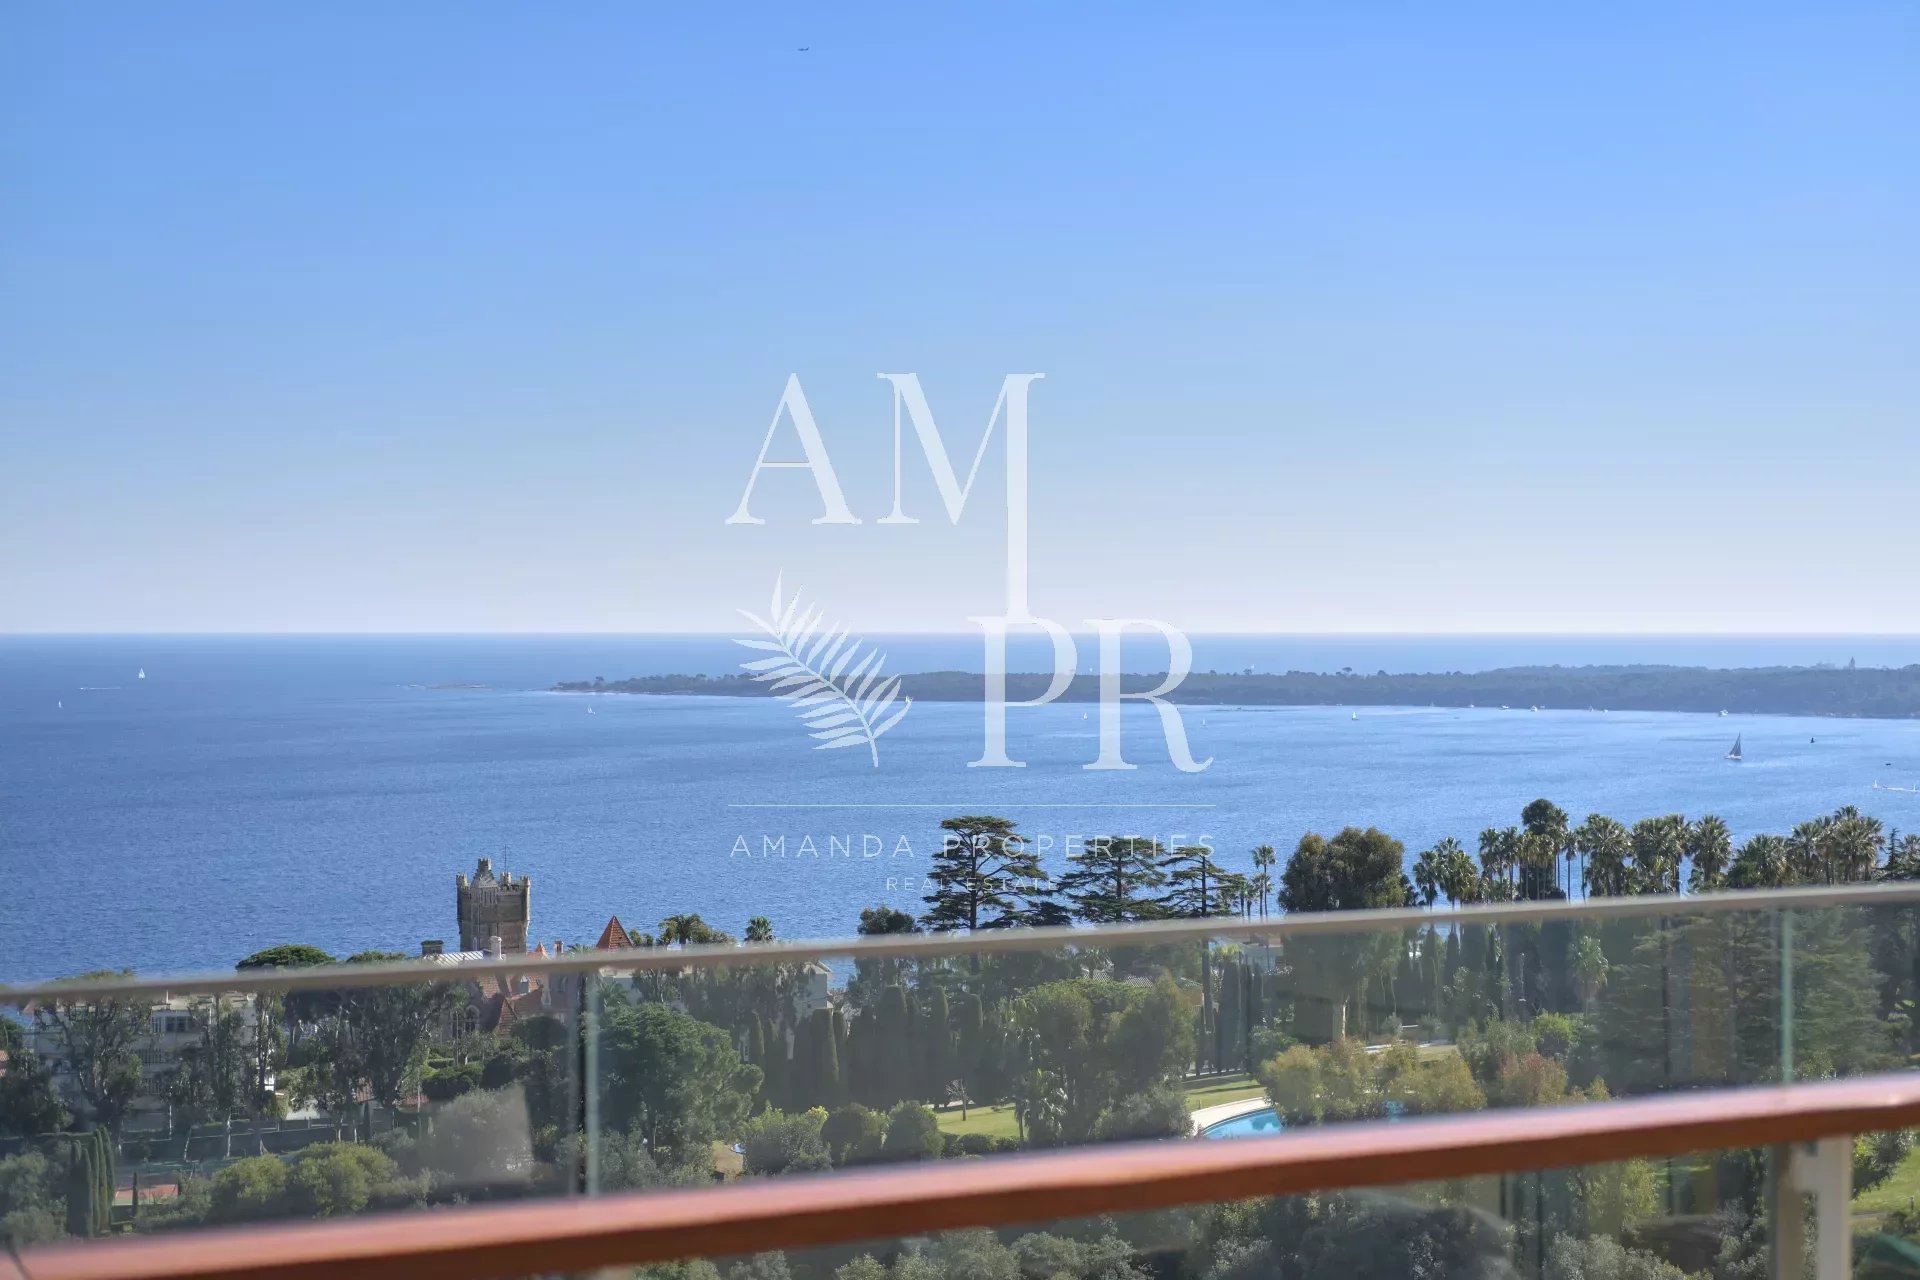 Cannes Californie - Appartement 4 pièces de 128m2 - Vue mer Panoramique